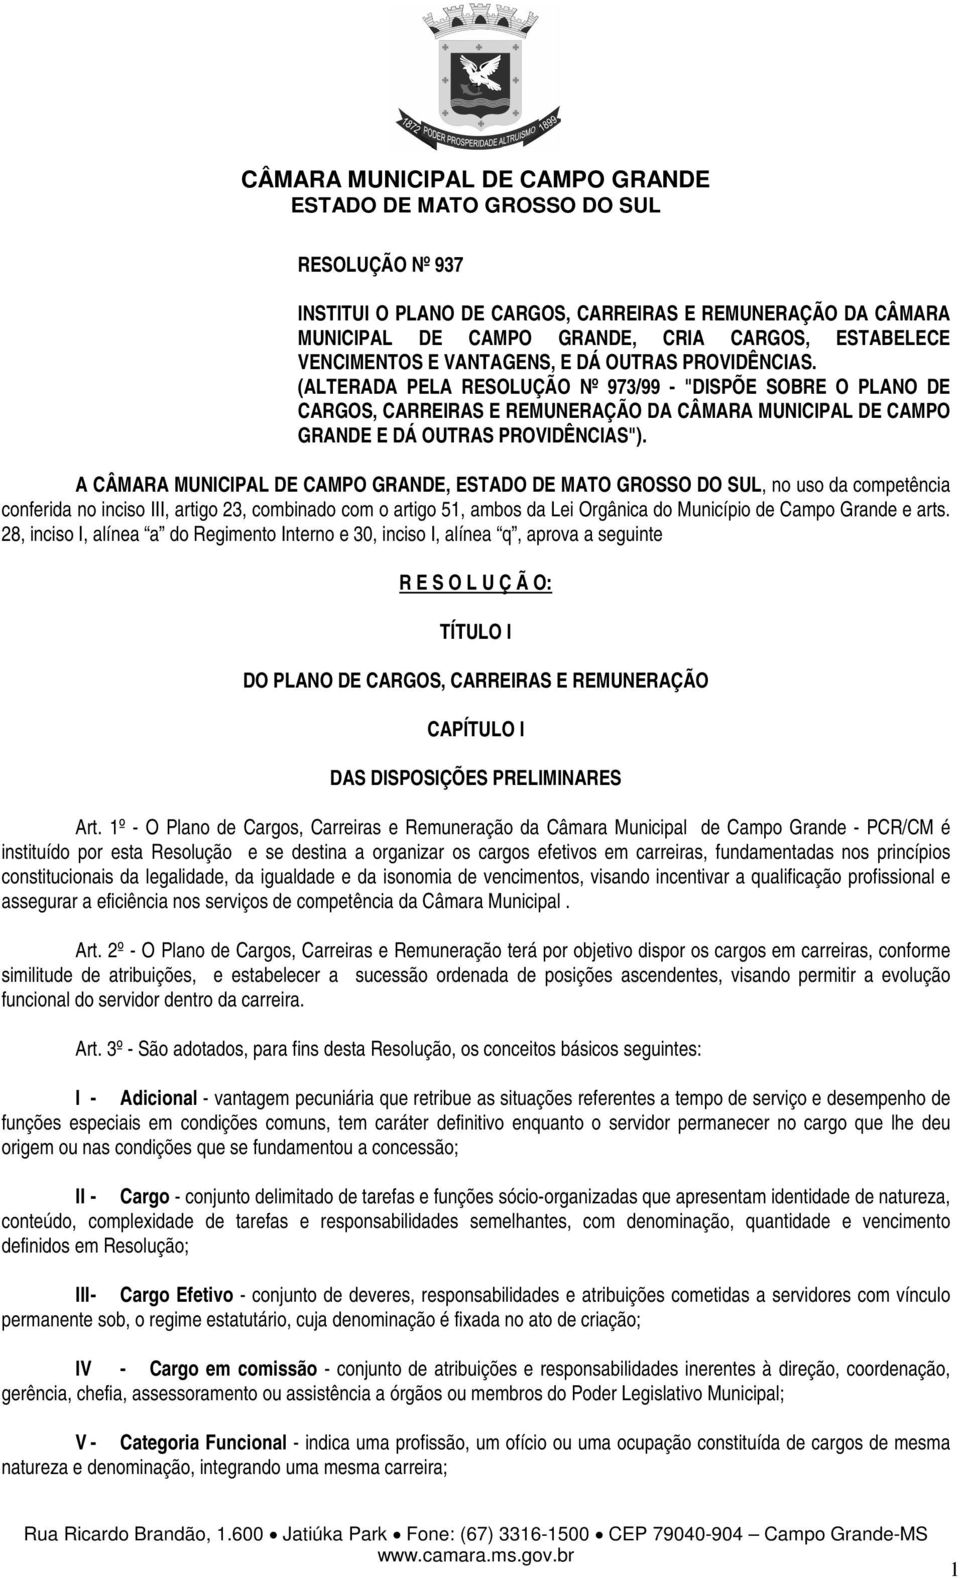 A CÂMARA MUNICIPAL DE CAMPO GRANDE,, no uso da competência conferida no inciso III, artigo 23, combinado com o artigo 51, ambos da Lei Orgânica do Município de Campo Grande e arts.